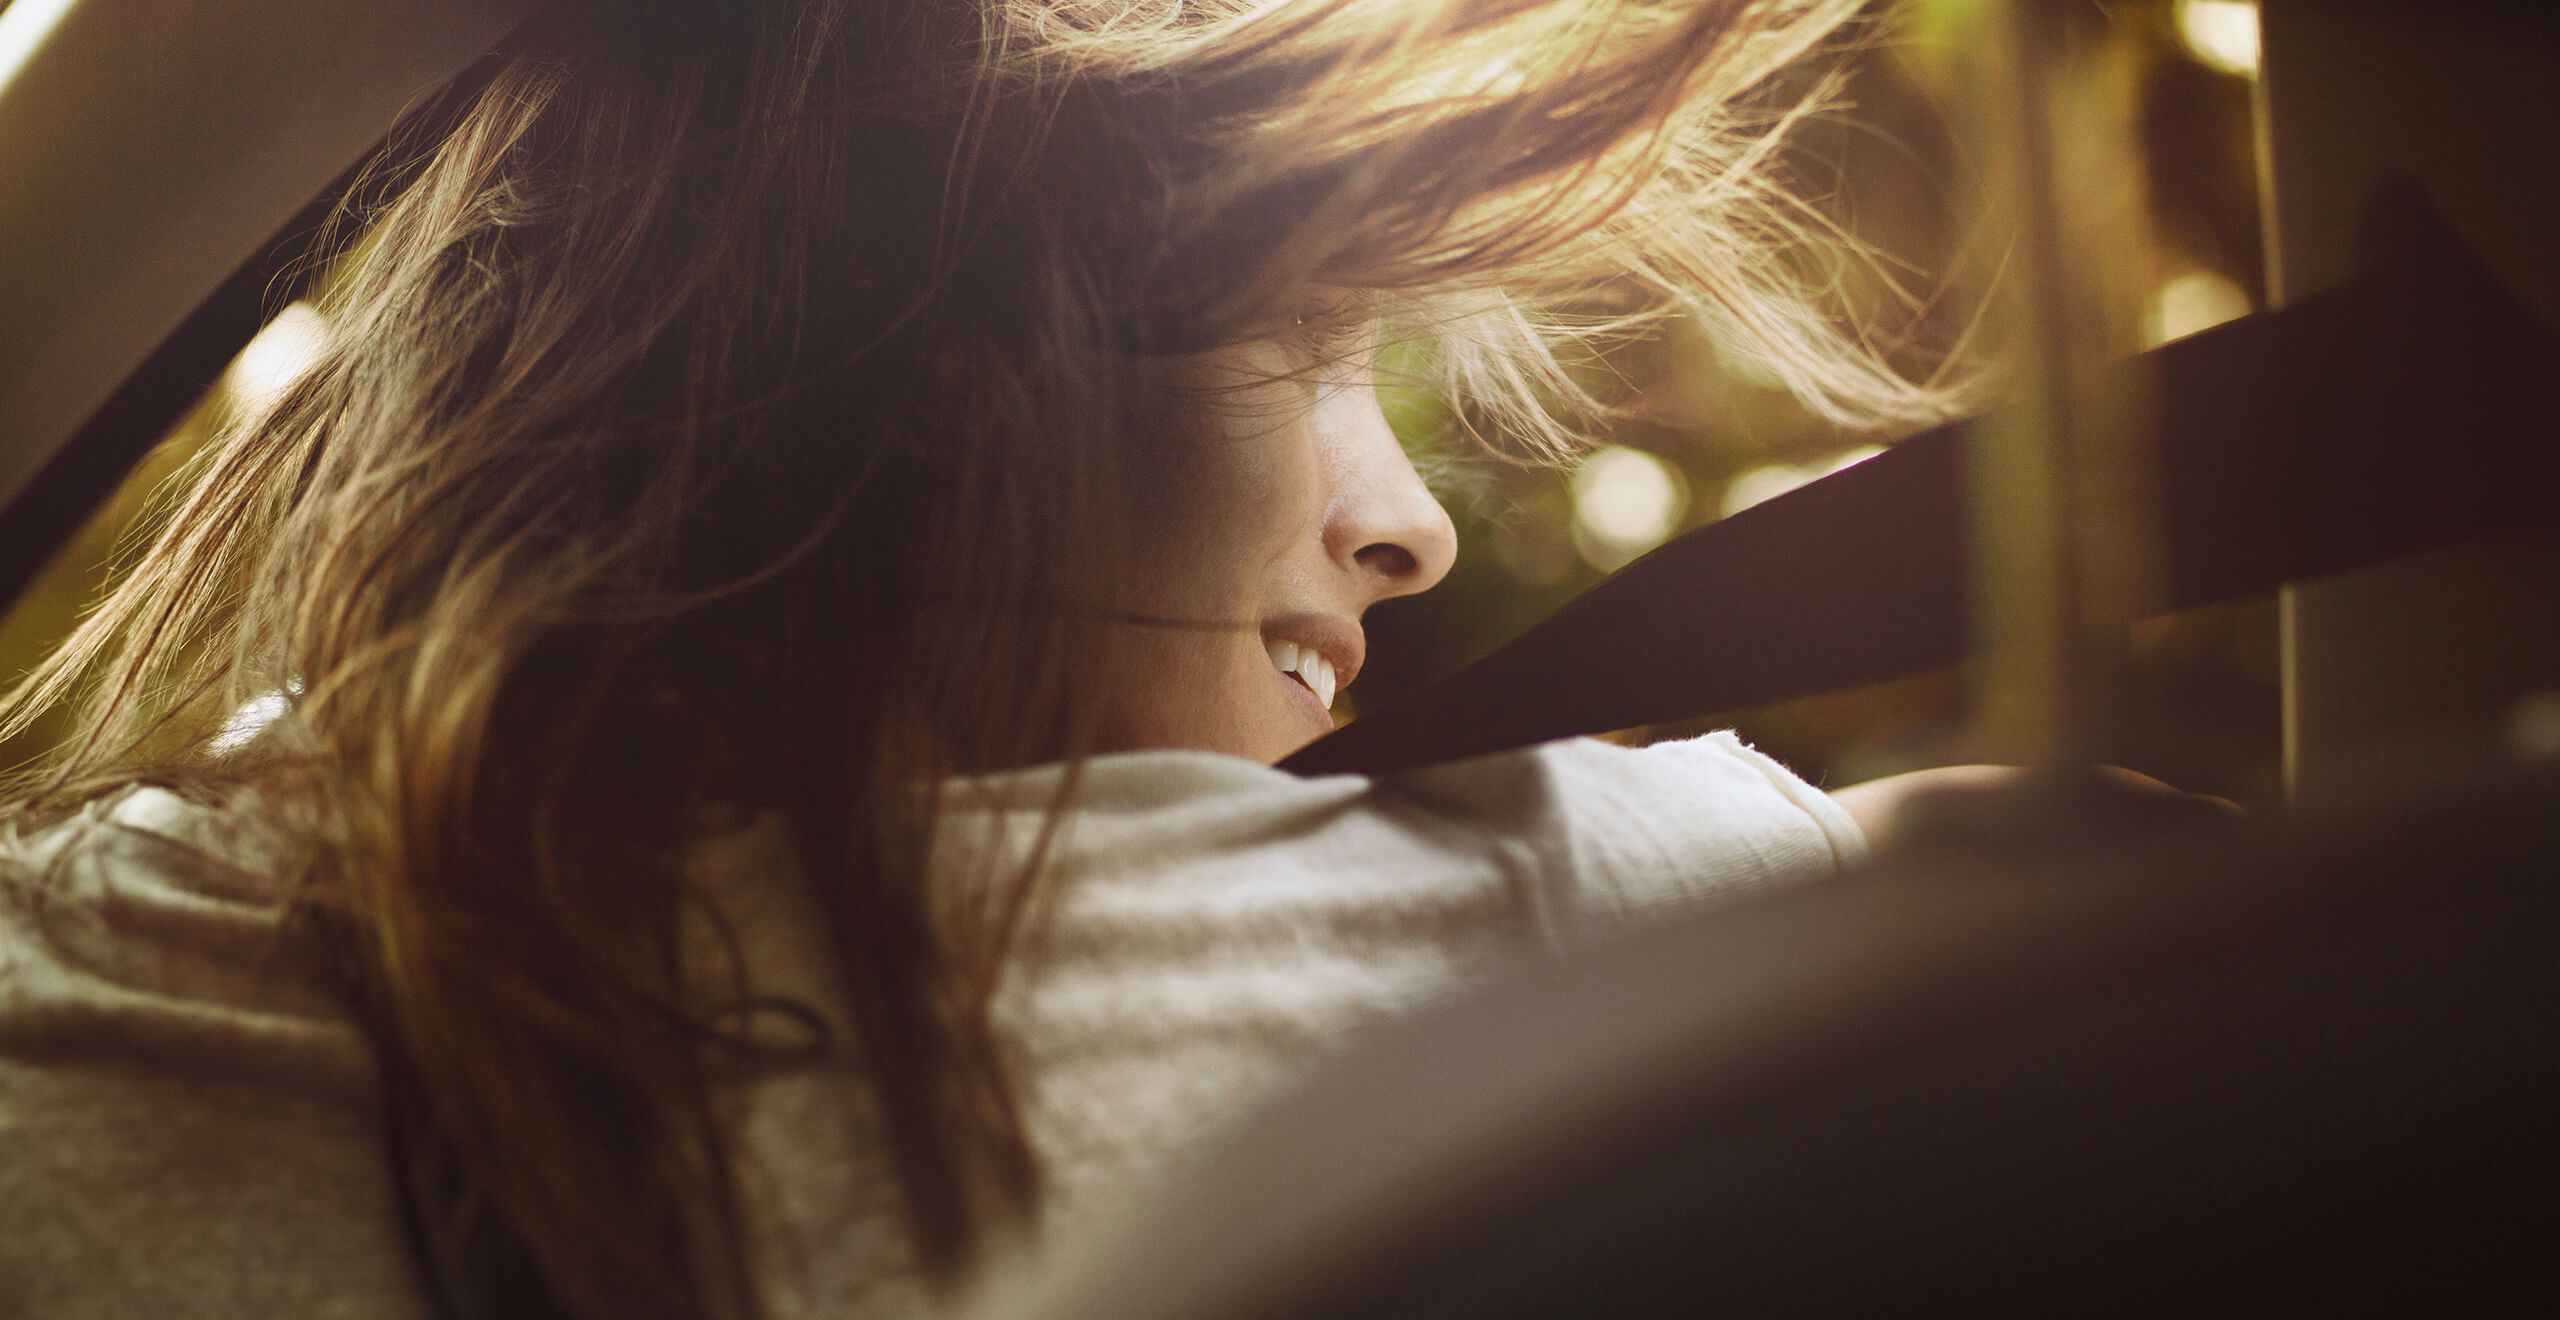 SEAT neuer Service – Frau steigt mit wehenden Haaren aus einem Auto aus